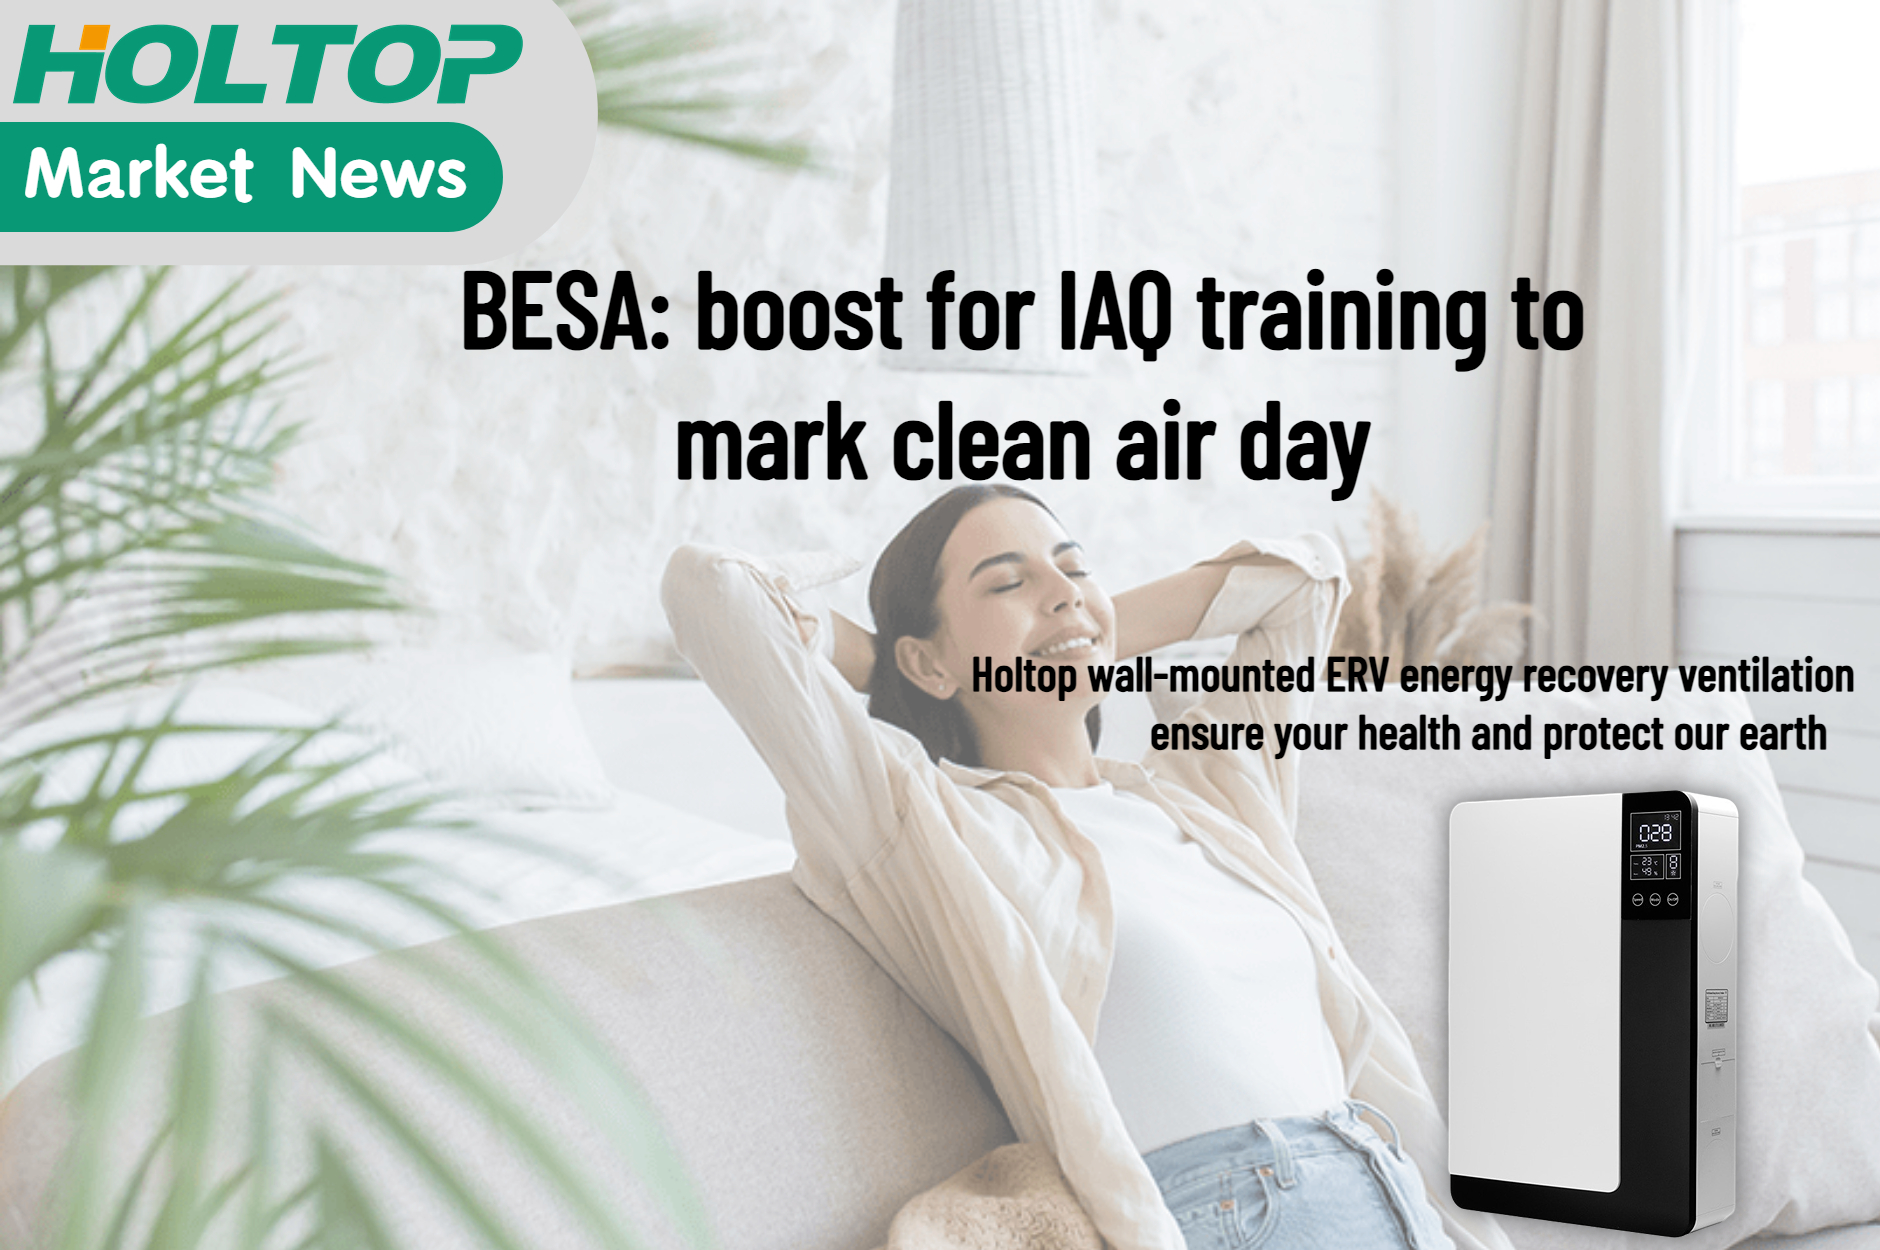 BESA повышает курс обучения IAQ в честь Дня чистого воздуха